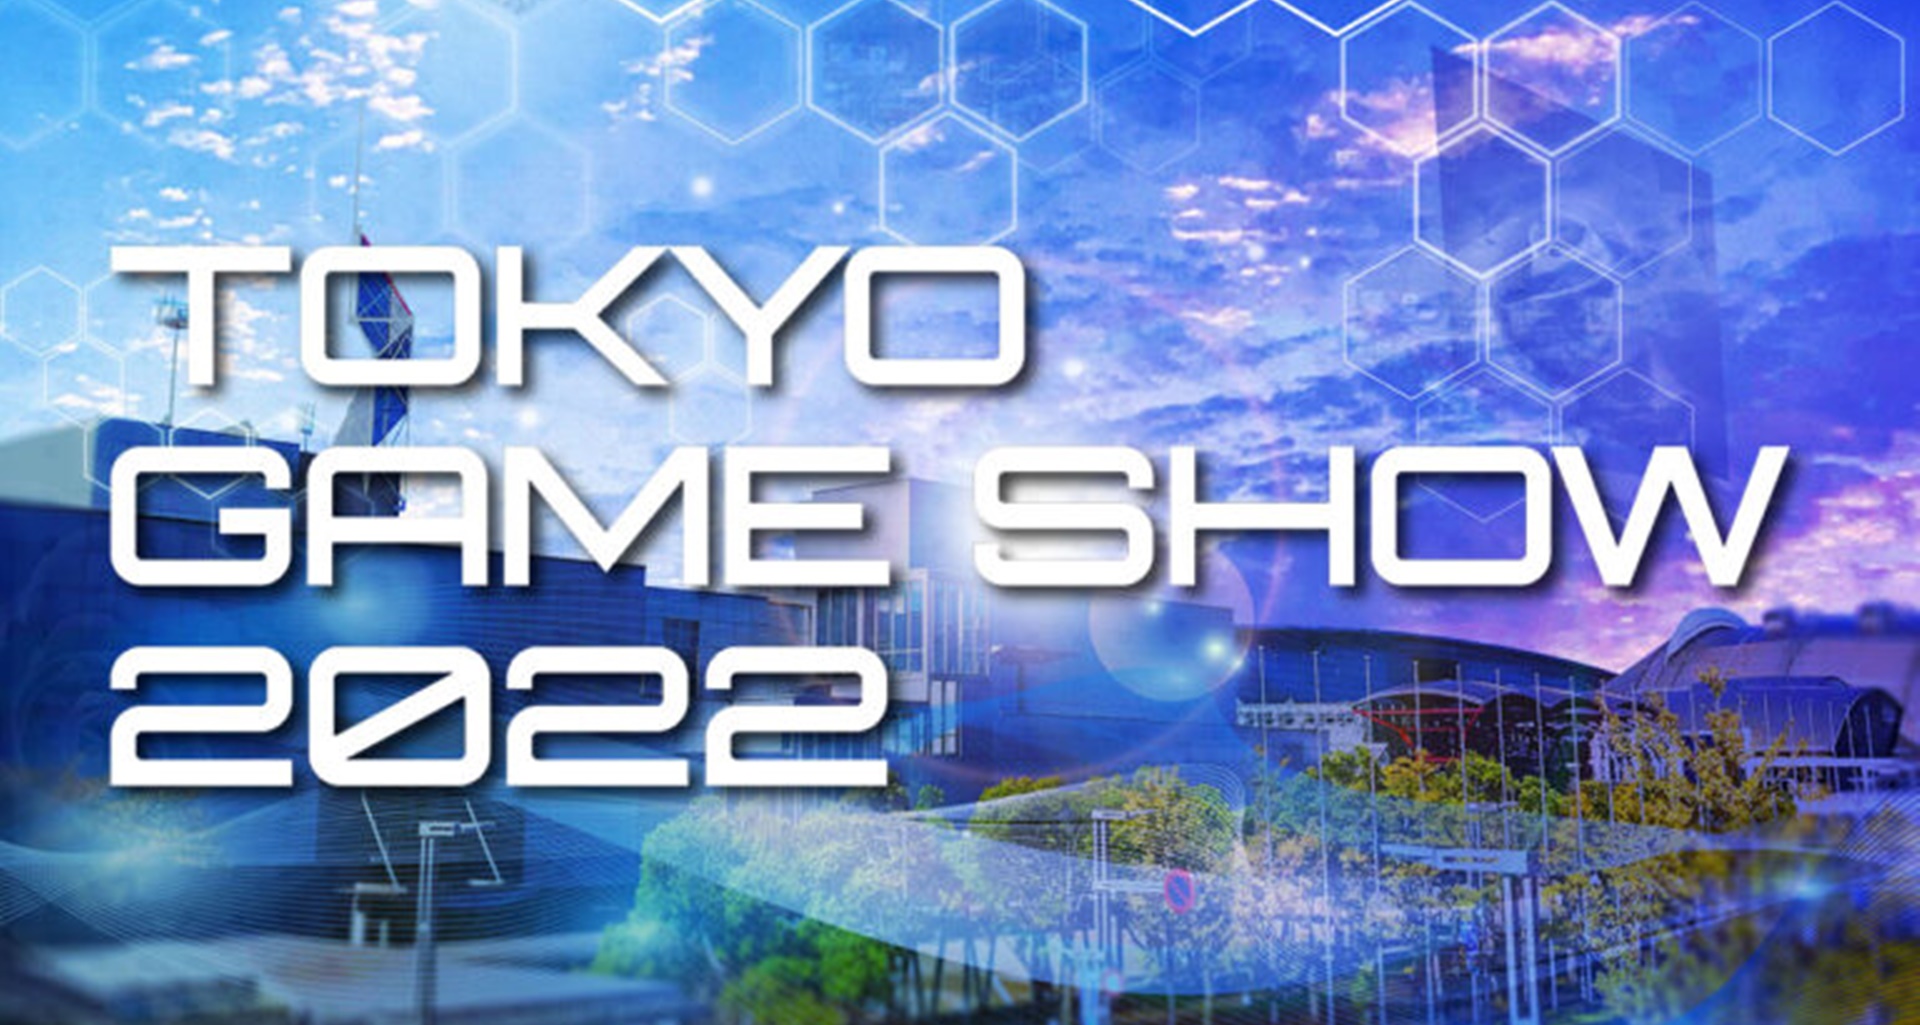 ข่าวดีงาน Tokyo Game Show กลับมาจัดอย่างเป็นทางการแล้ว